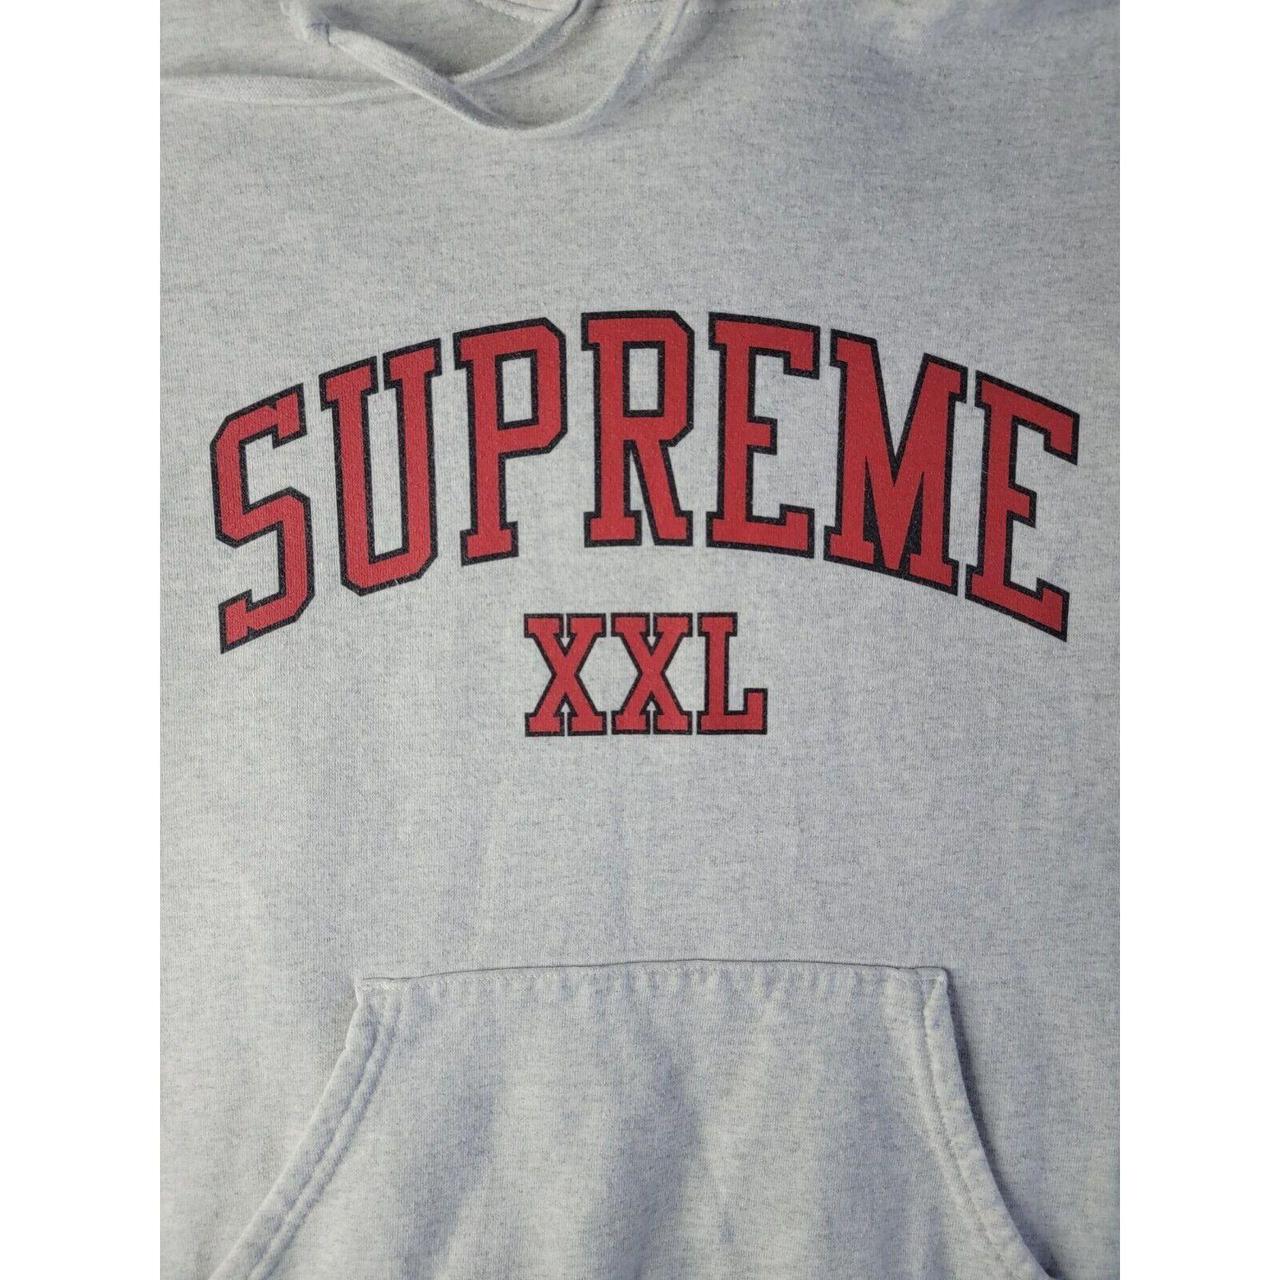 Supreme Logo Unisex Hoodie  Hoodies, Supreme hoodie, Hoodies men